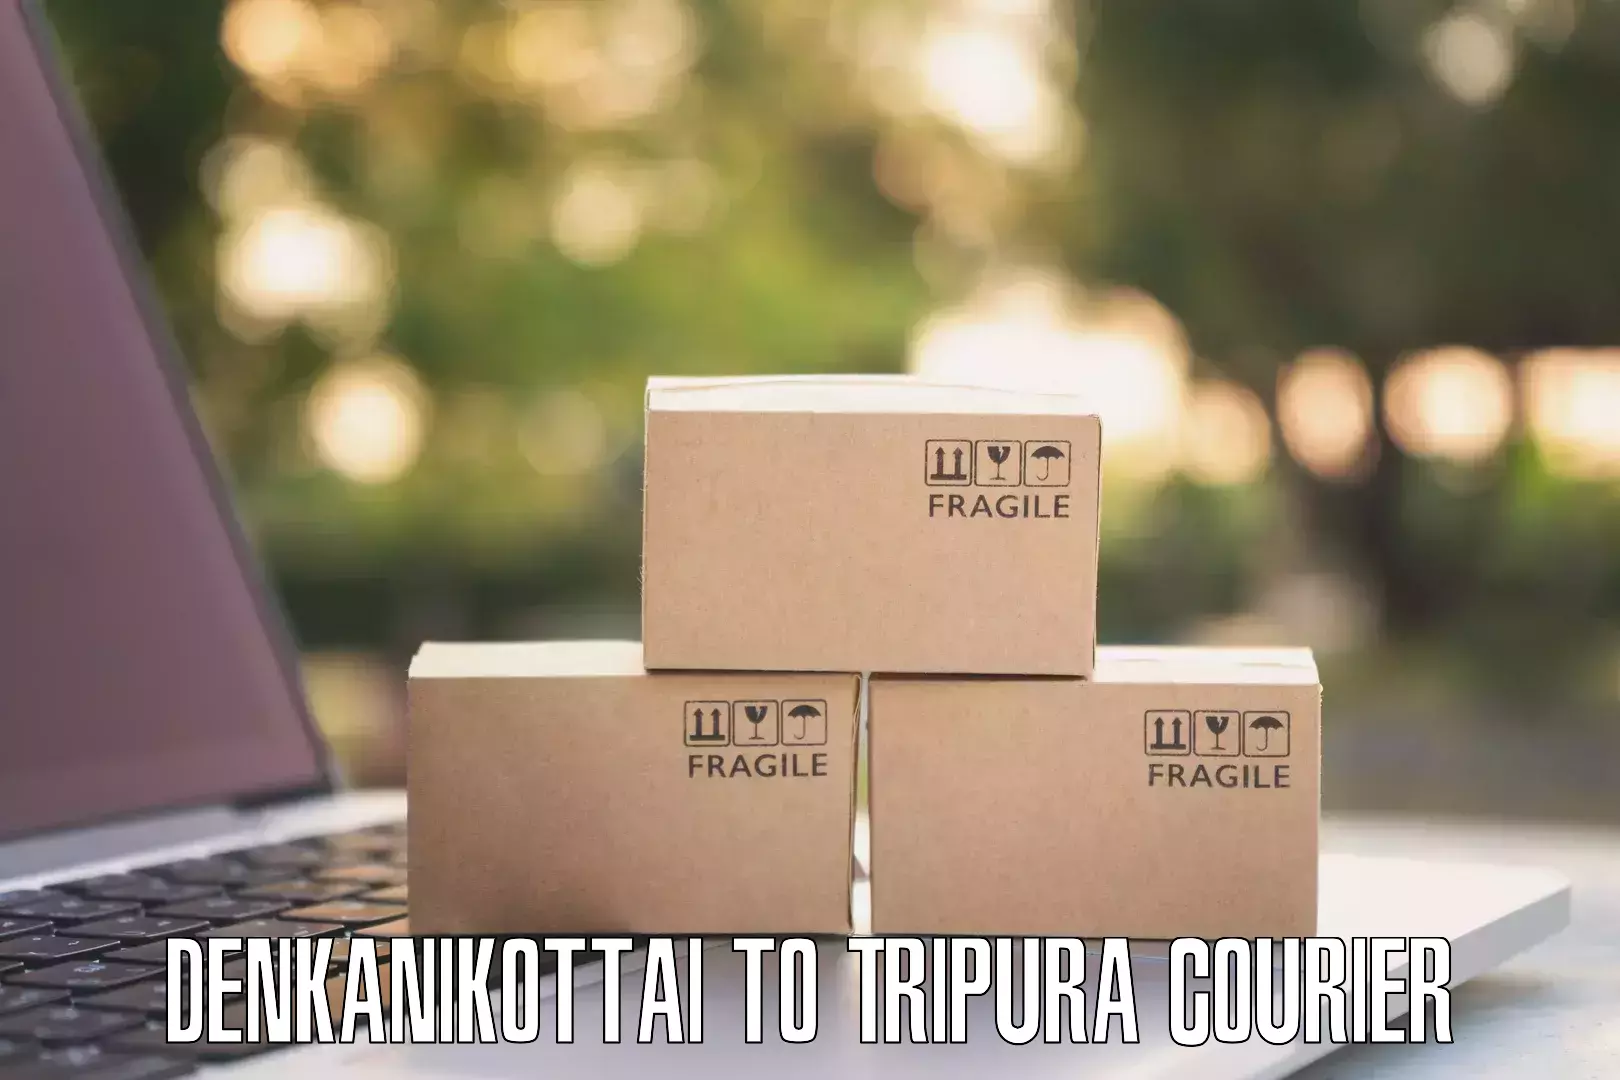 Subscription-based courier Denkanikottai to Amarpur Gomati